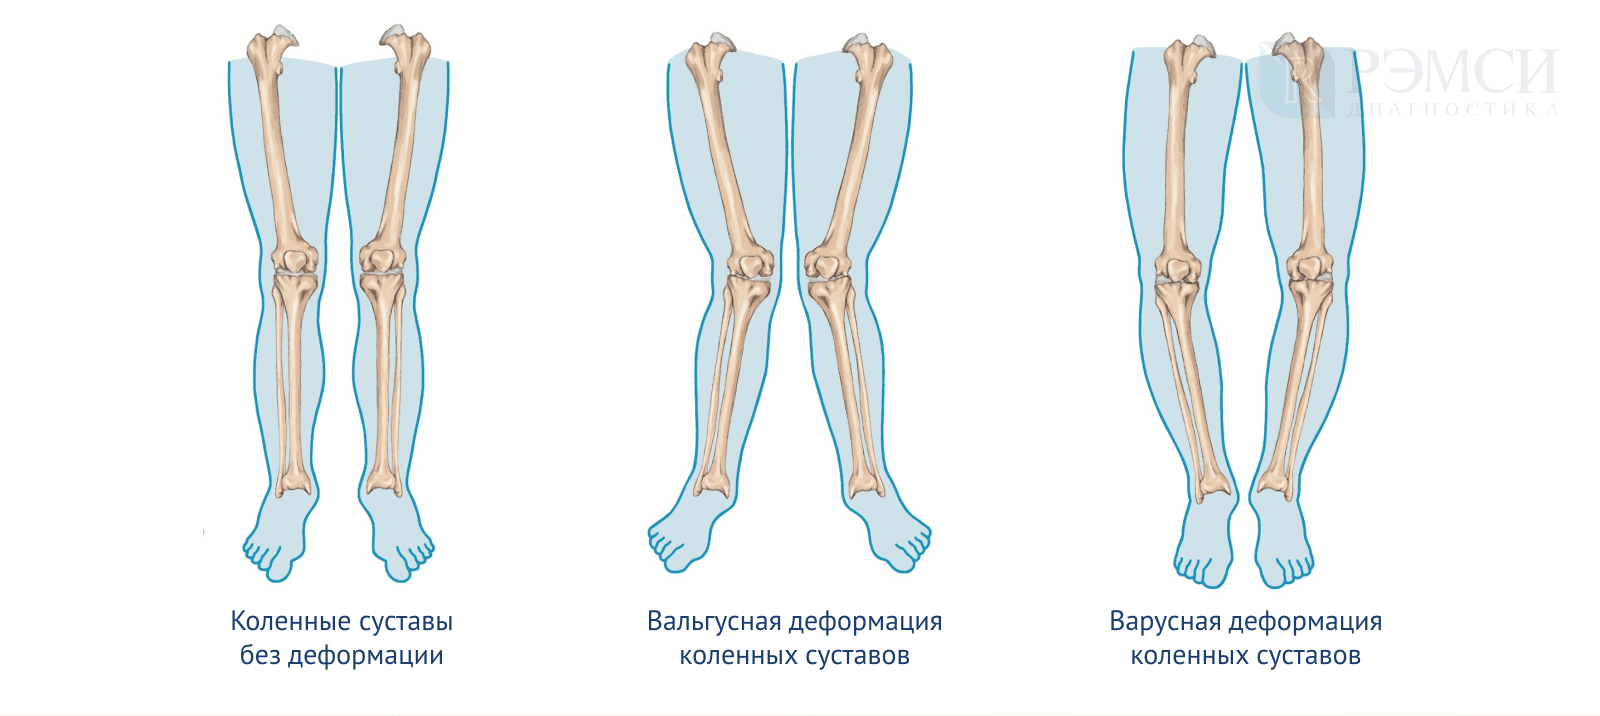 1 пр клонить колени. Варусная деформация оси нижних конечностей. Варусная деформация коленных суставов рентген. Сгибательная и вальгусная деформация коленных суставов. Варусная и вальгусная деформация коленного сустава.